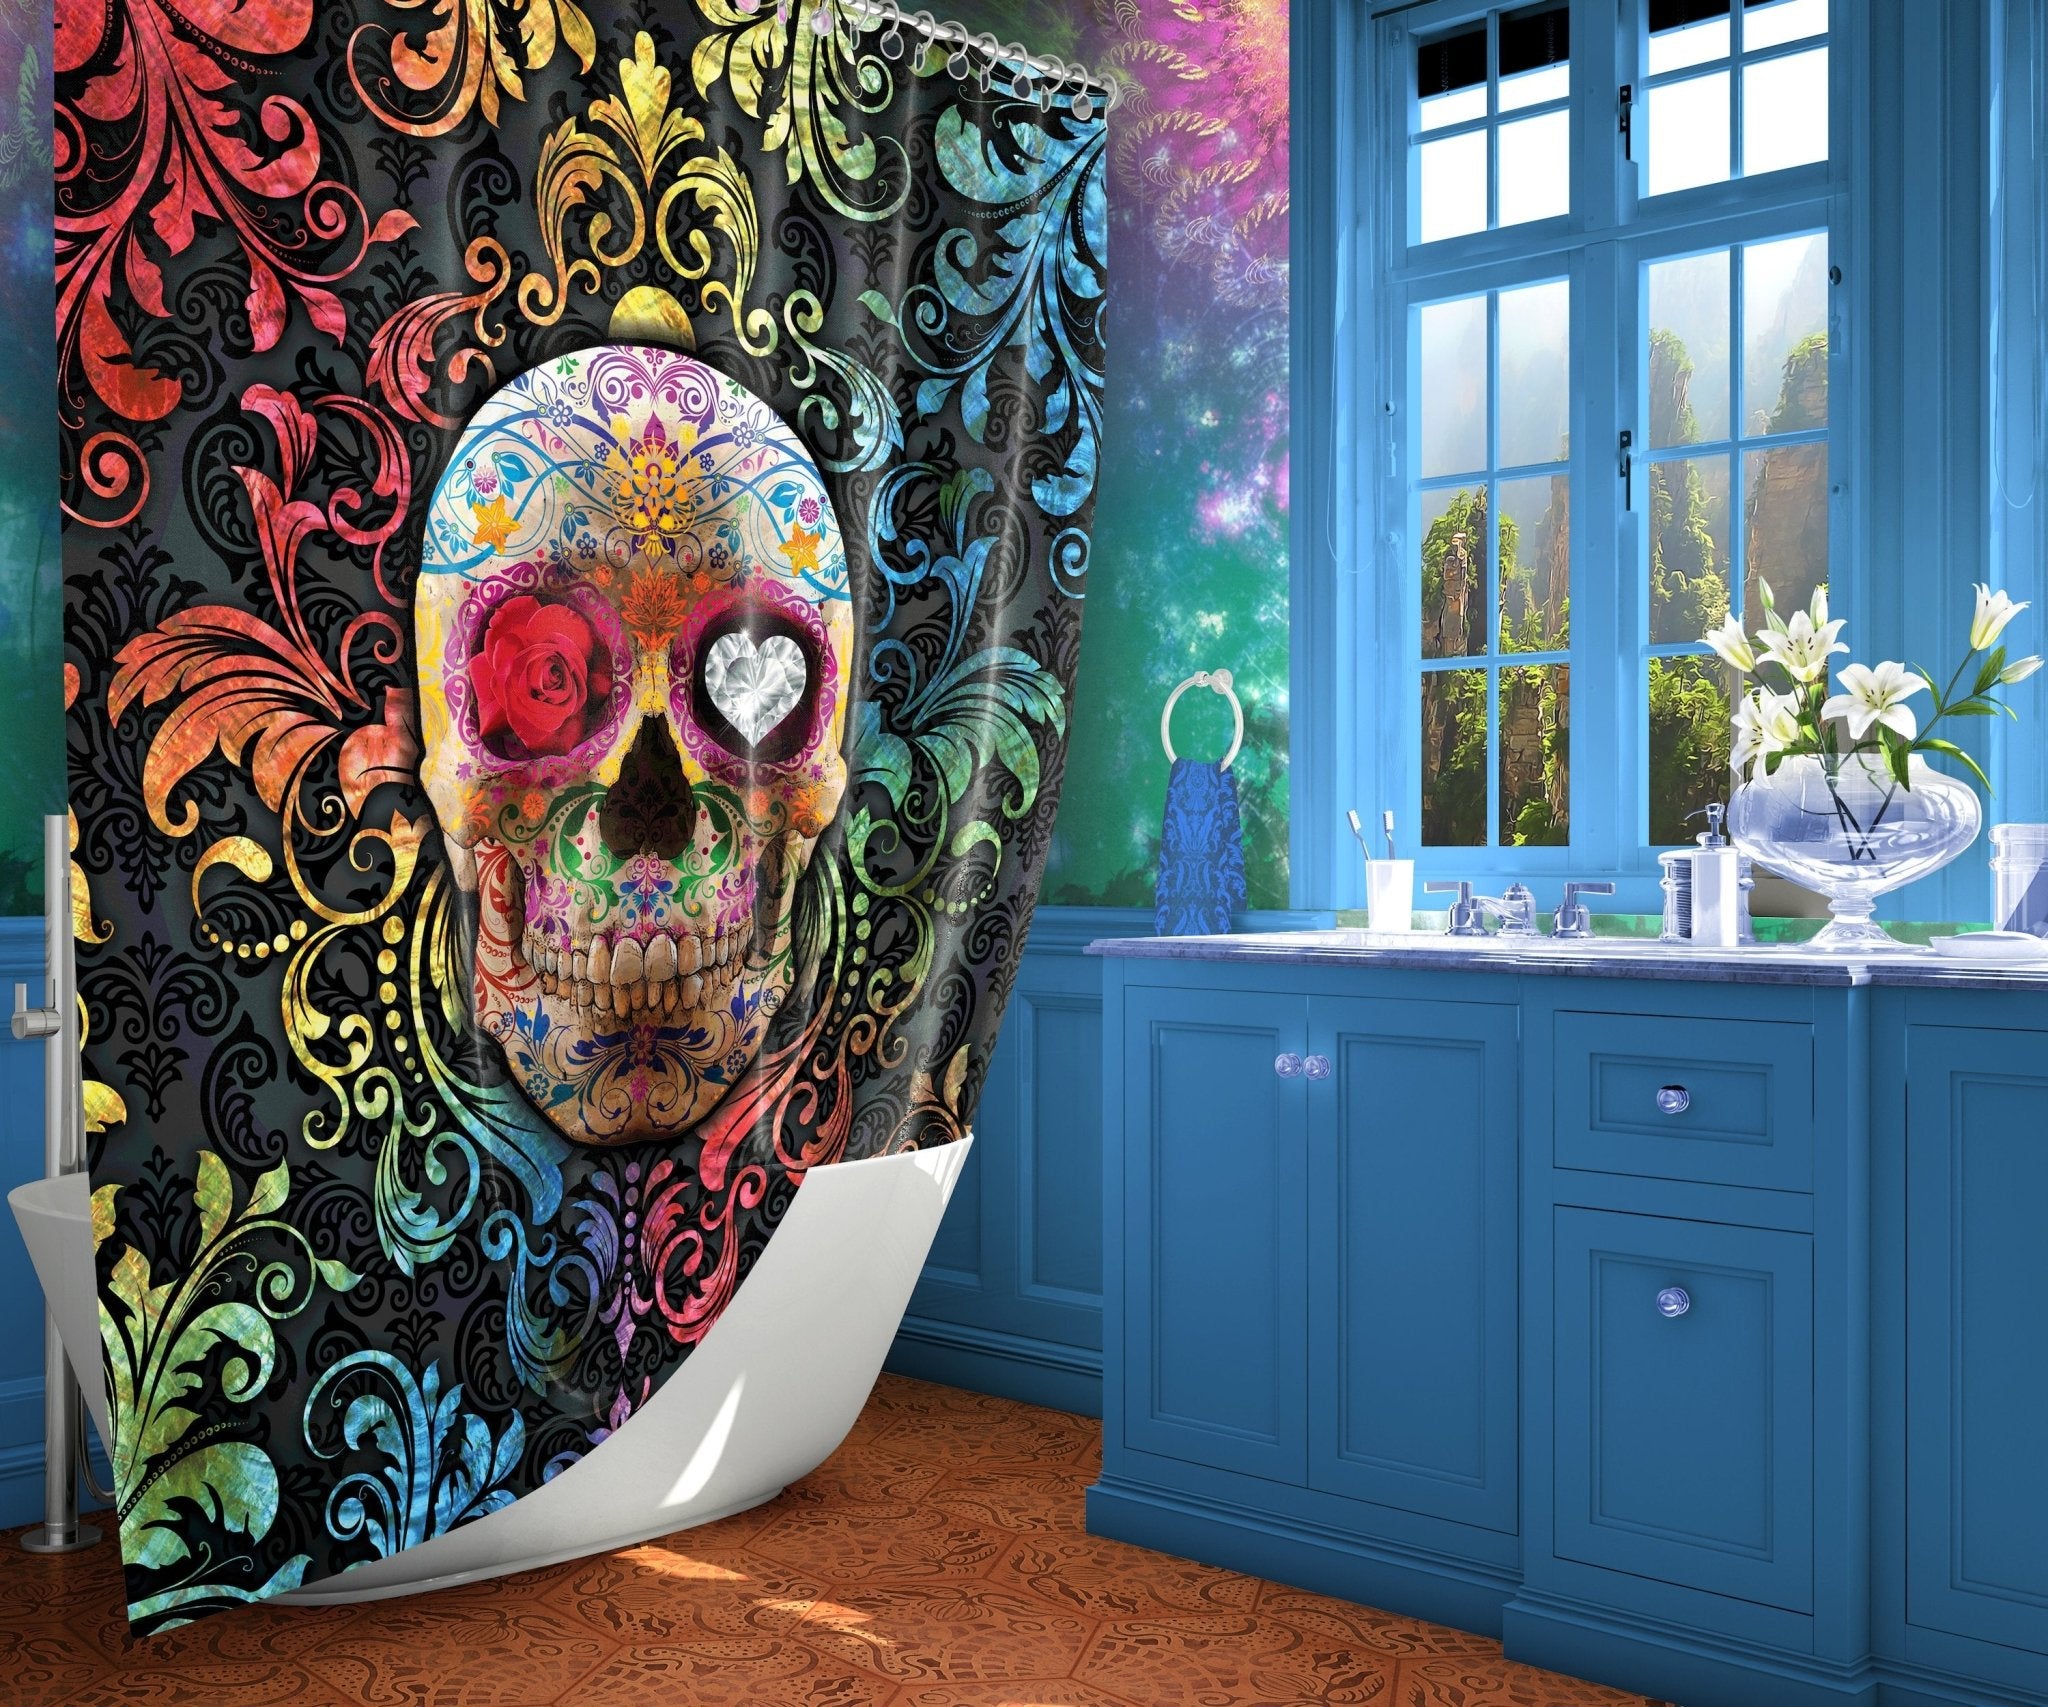 Sugar Skull Shower Curtain, Dia de los Muertos, Day of the Dead, Mexican Bathroom Decor, Festive, Macabre Decor - Abysm Internal